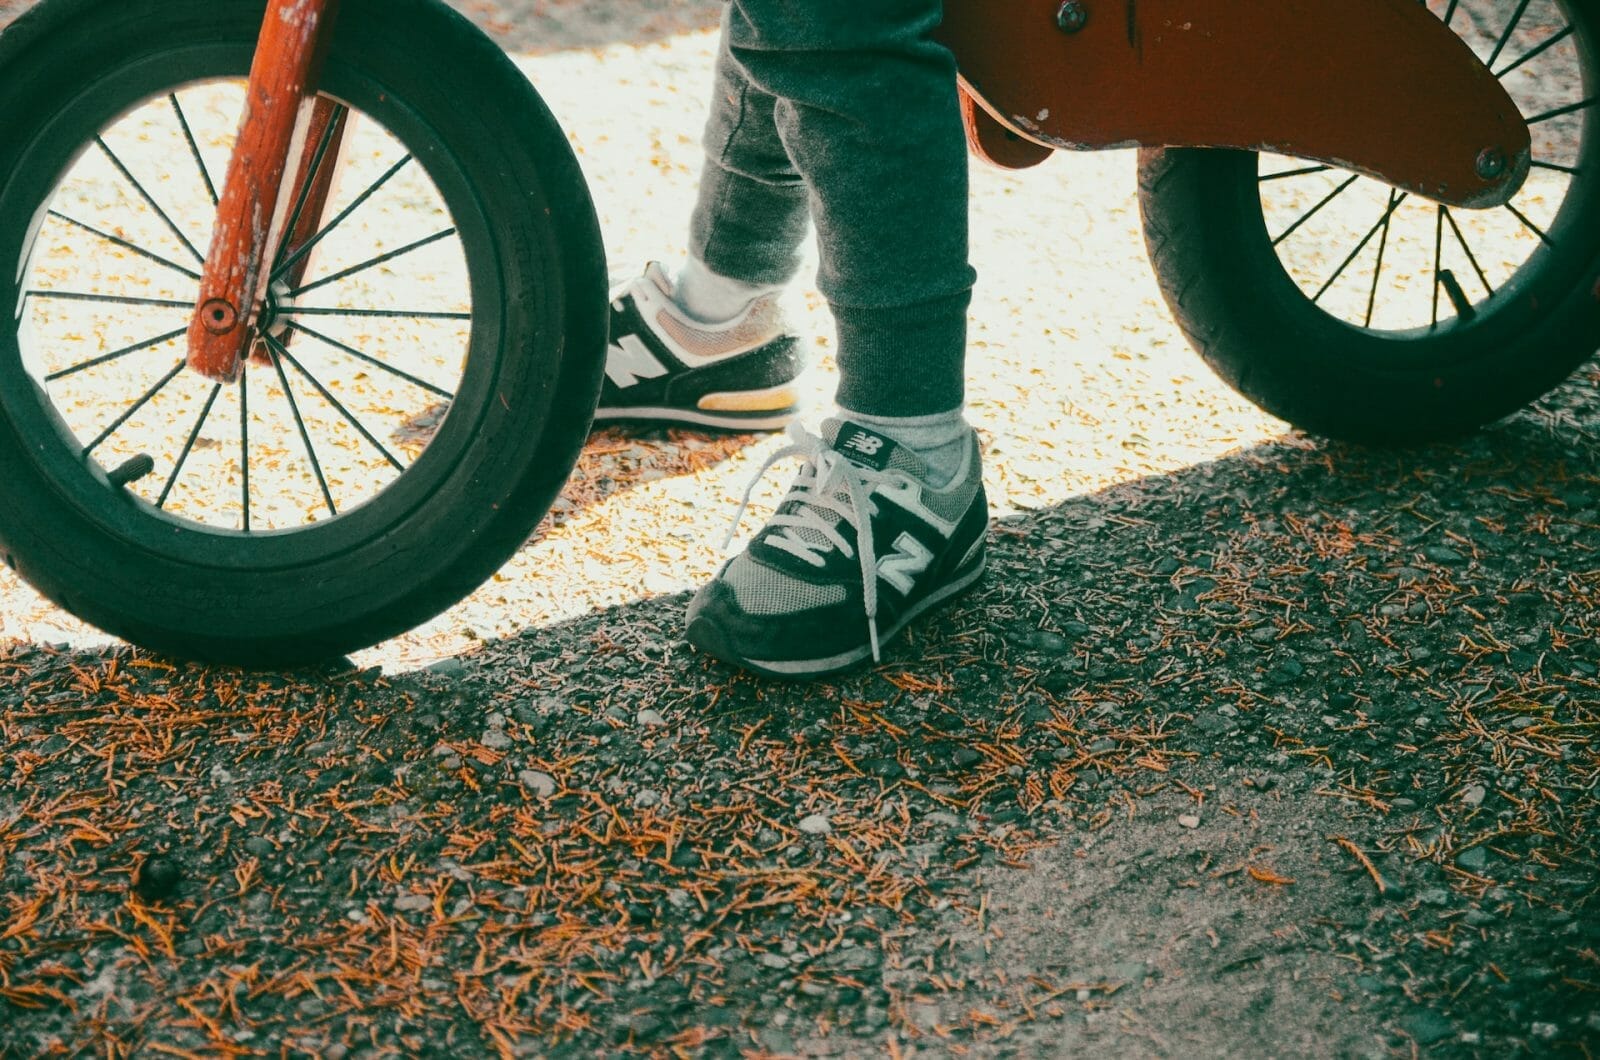 a foto mostra uma criança em uma bicicleta de equilíbrio, com os pés encostados no chão, o que significa que a bike tem o tamanho certo para ela